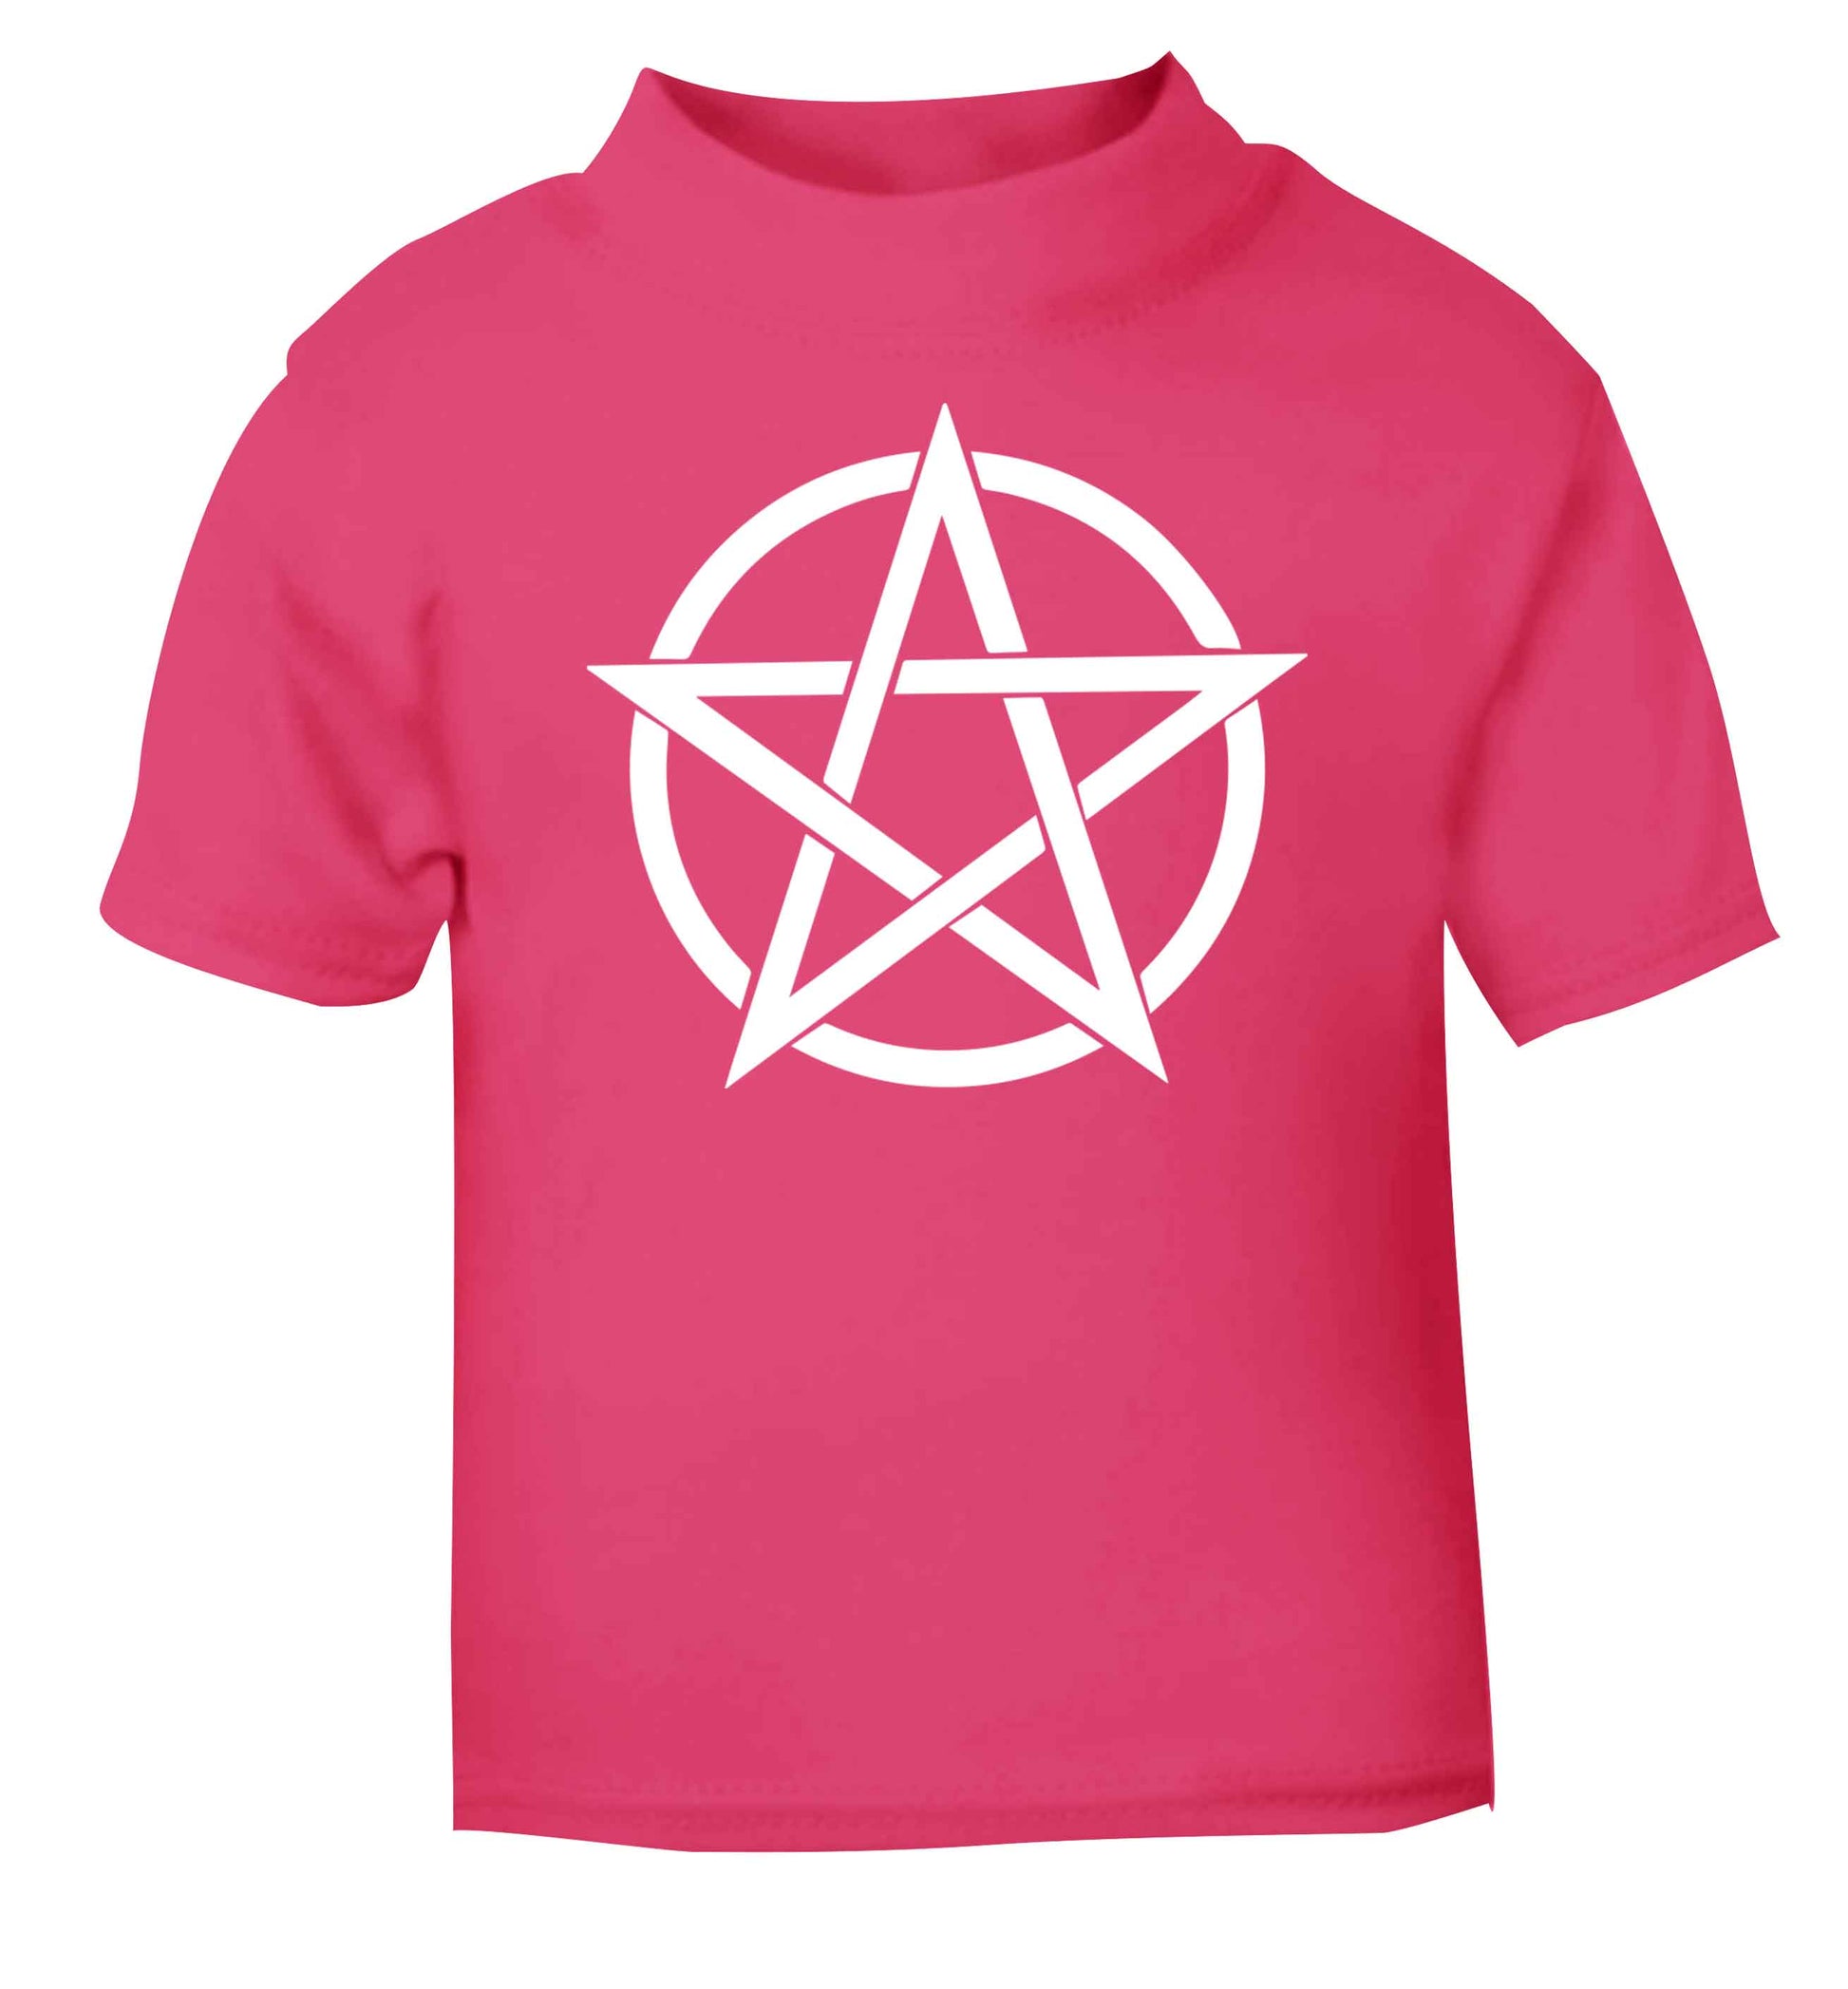 Pentagram symbol pink baby toddler Tshirt 2 Years